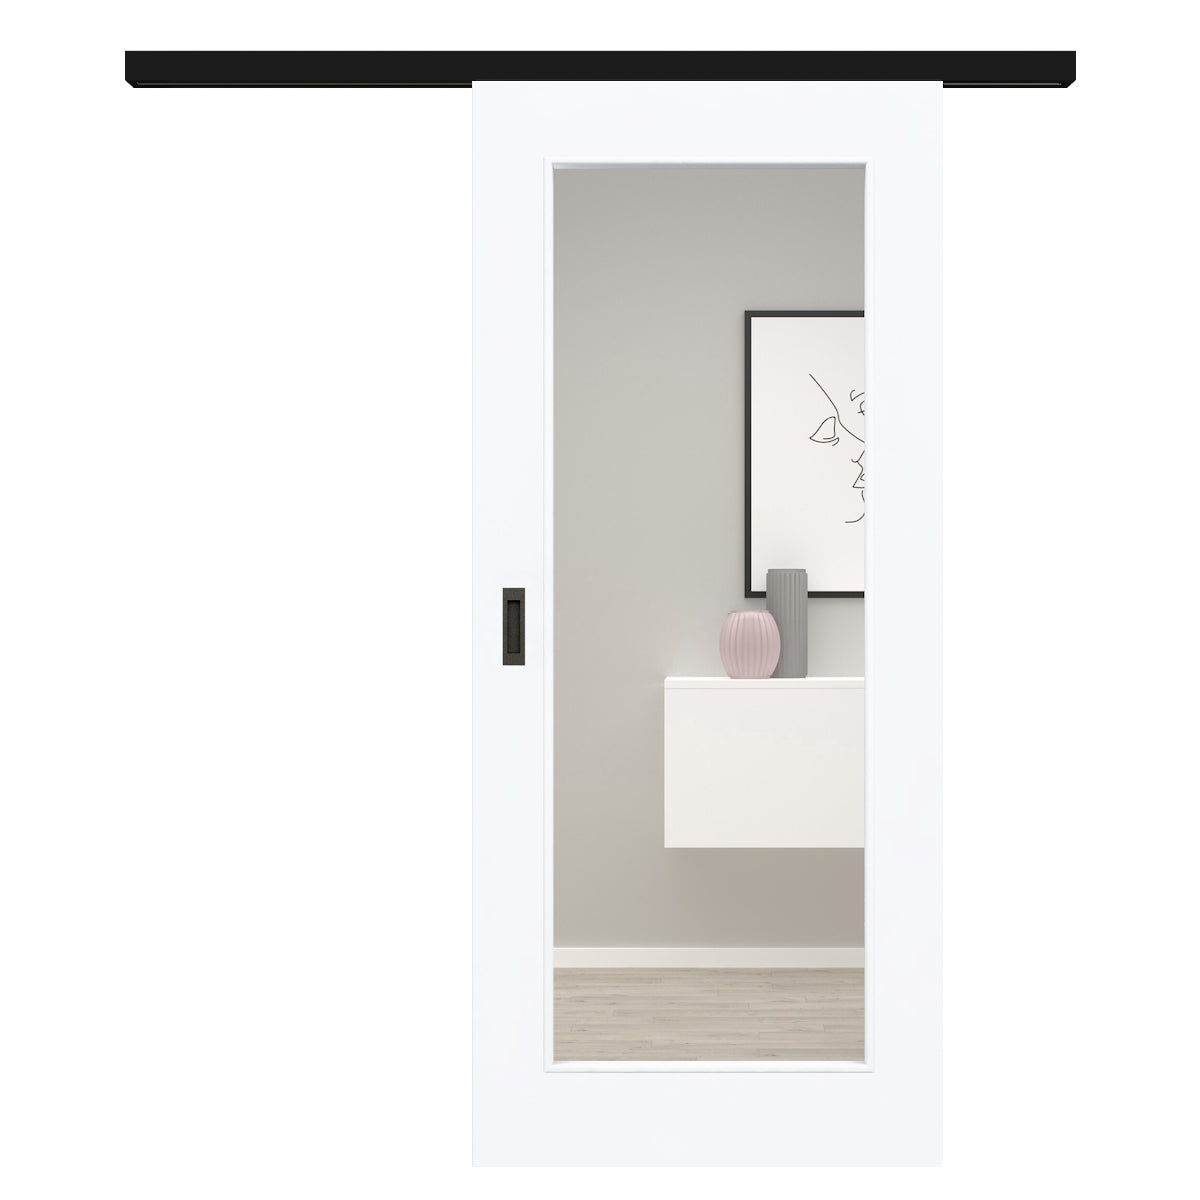 Schiebetür für Set mit schwarzem Laufkasten brillant-weiß Stiltür mit 1 Kassette und Lichtausschnitt - Modell Stiltür M13LA